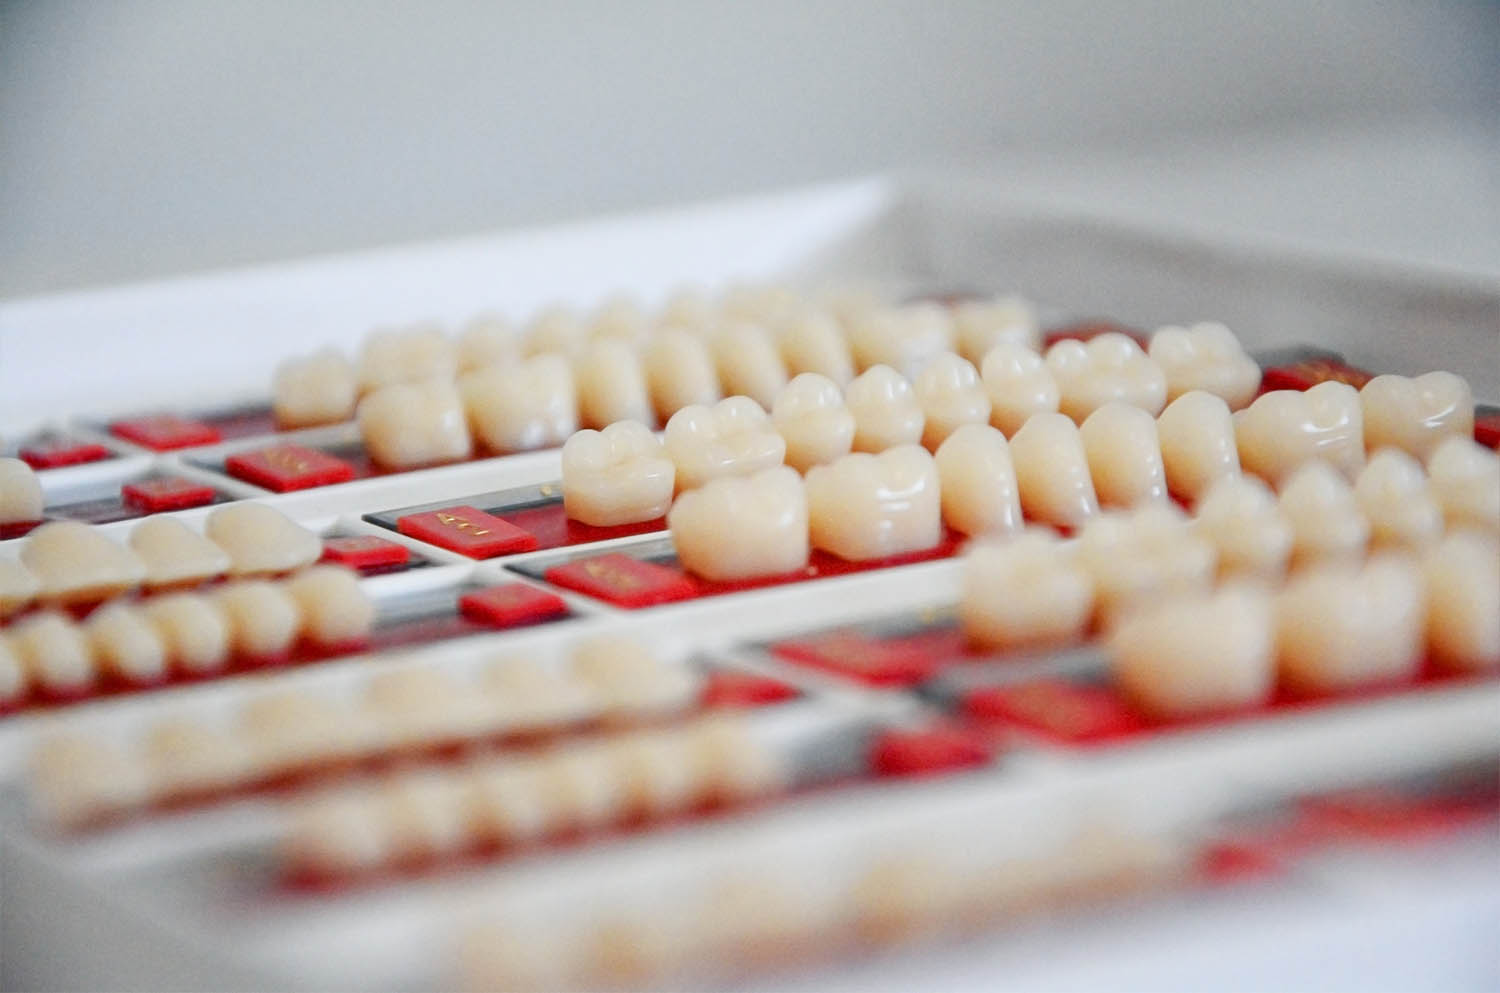 kronen bruggen implantaten en prothetiek - Dental Esthetics tandheelkunde Sterrebeek